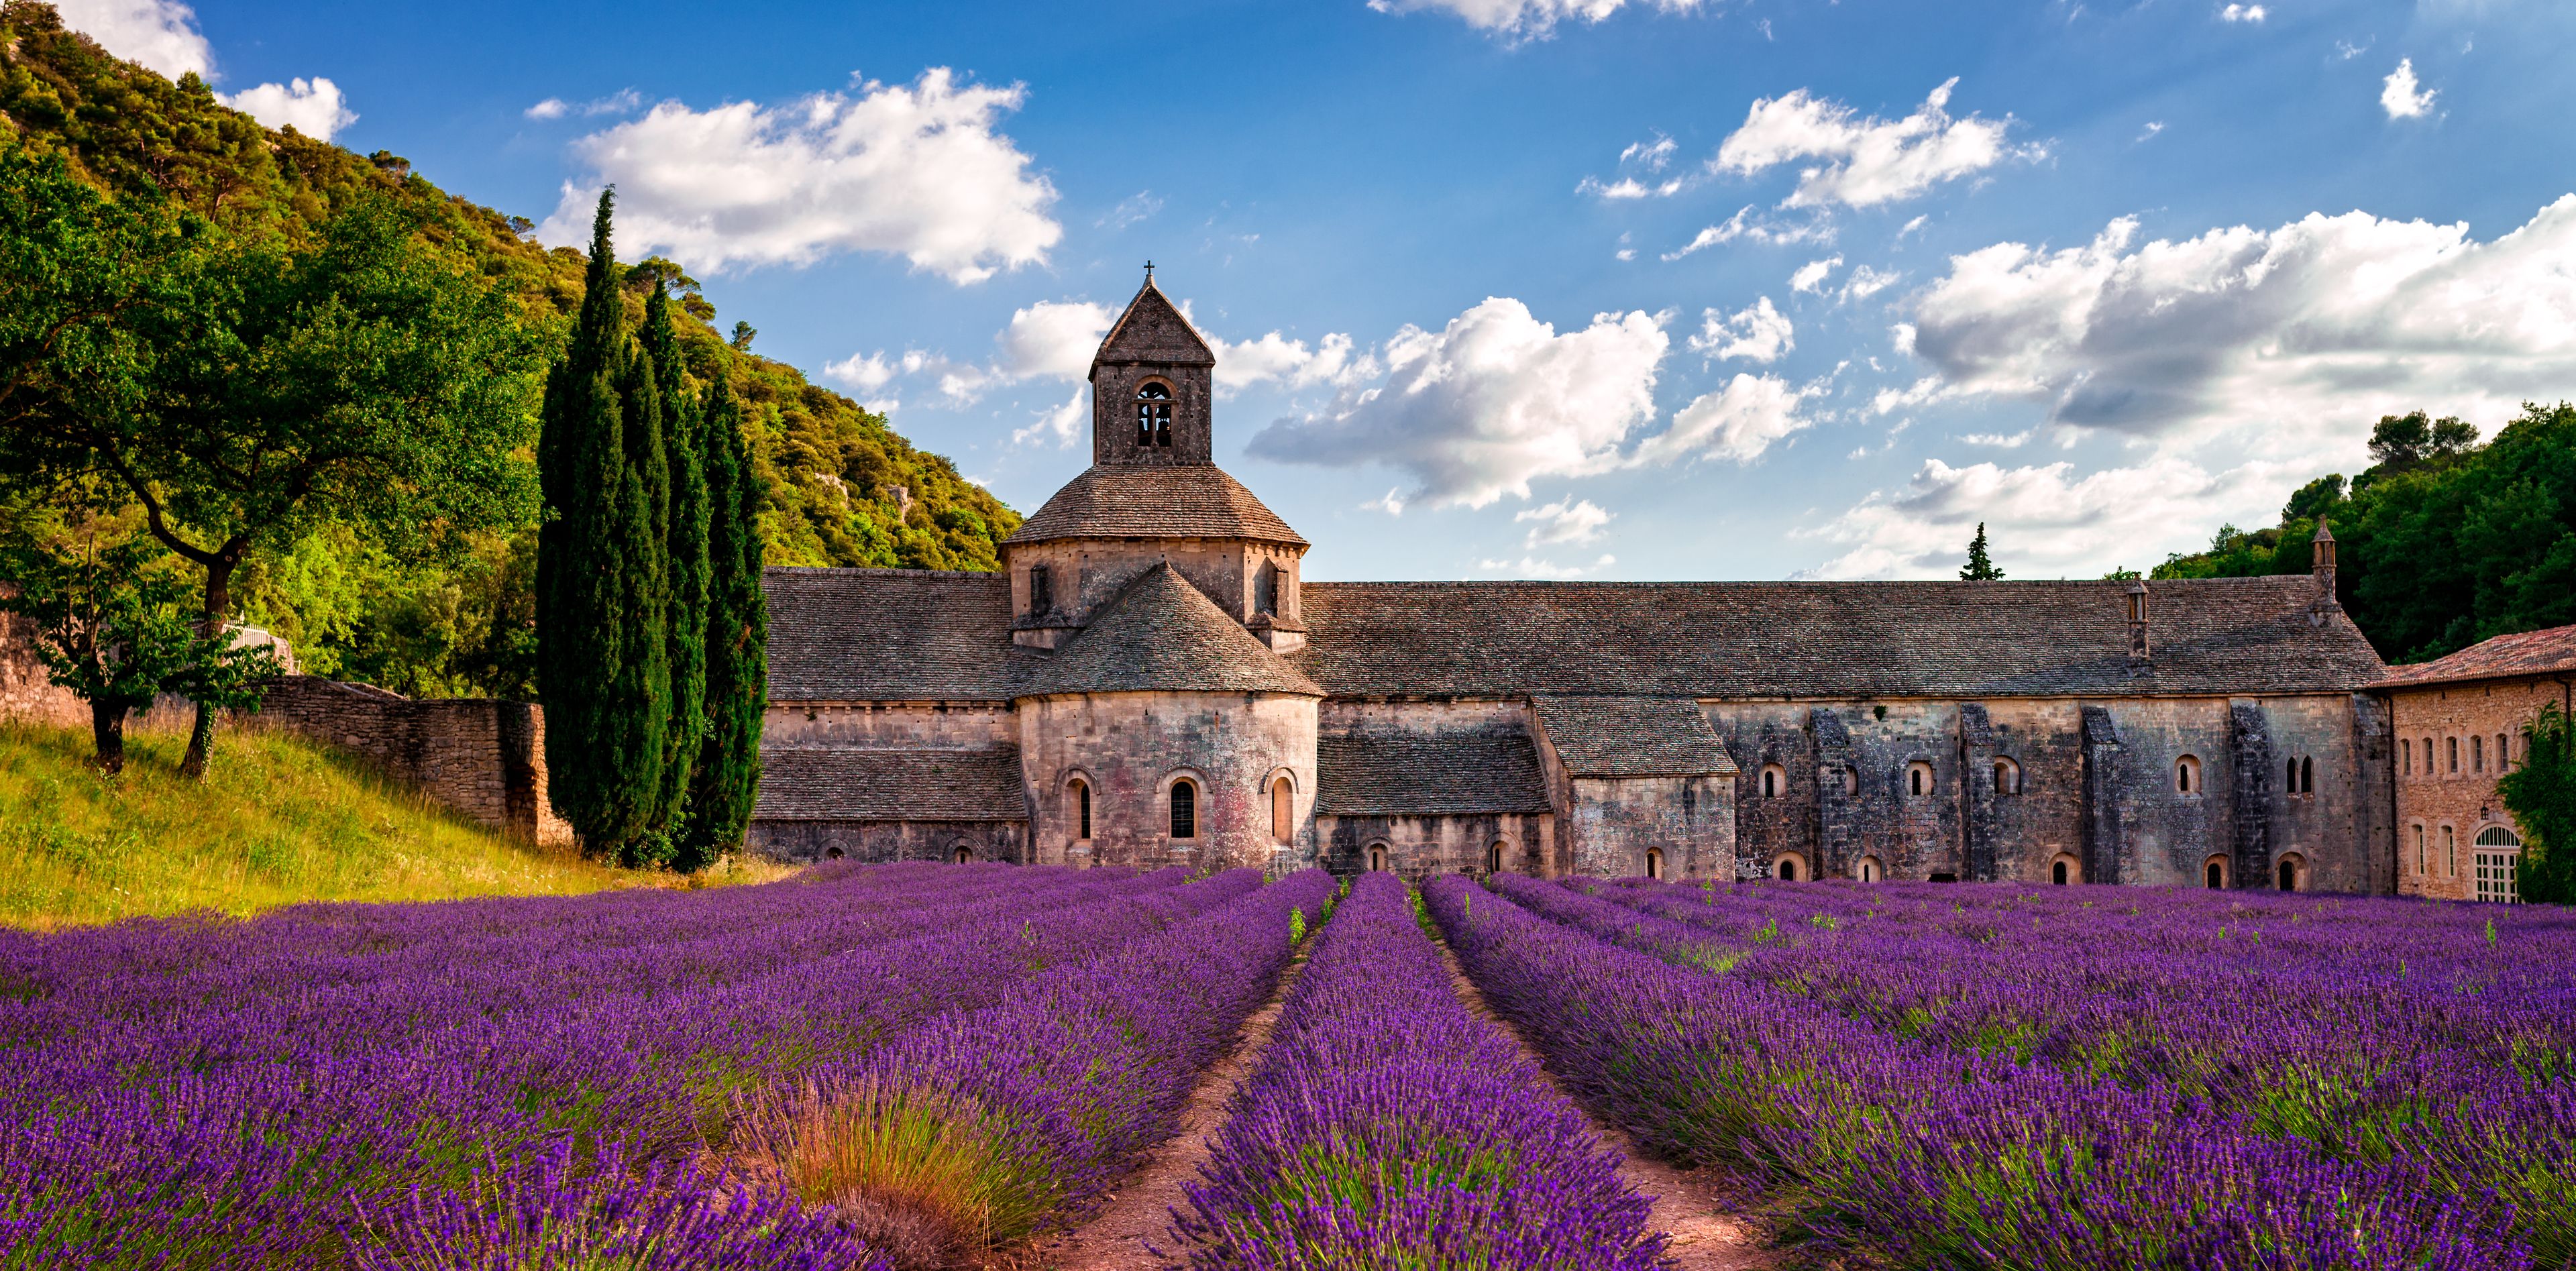 Lavendelfeld vor einer alten Abtei